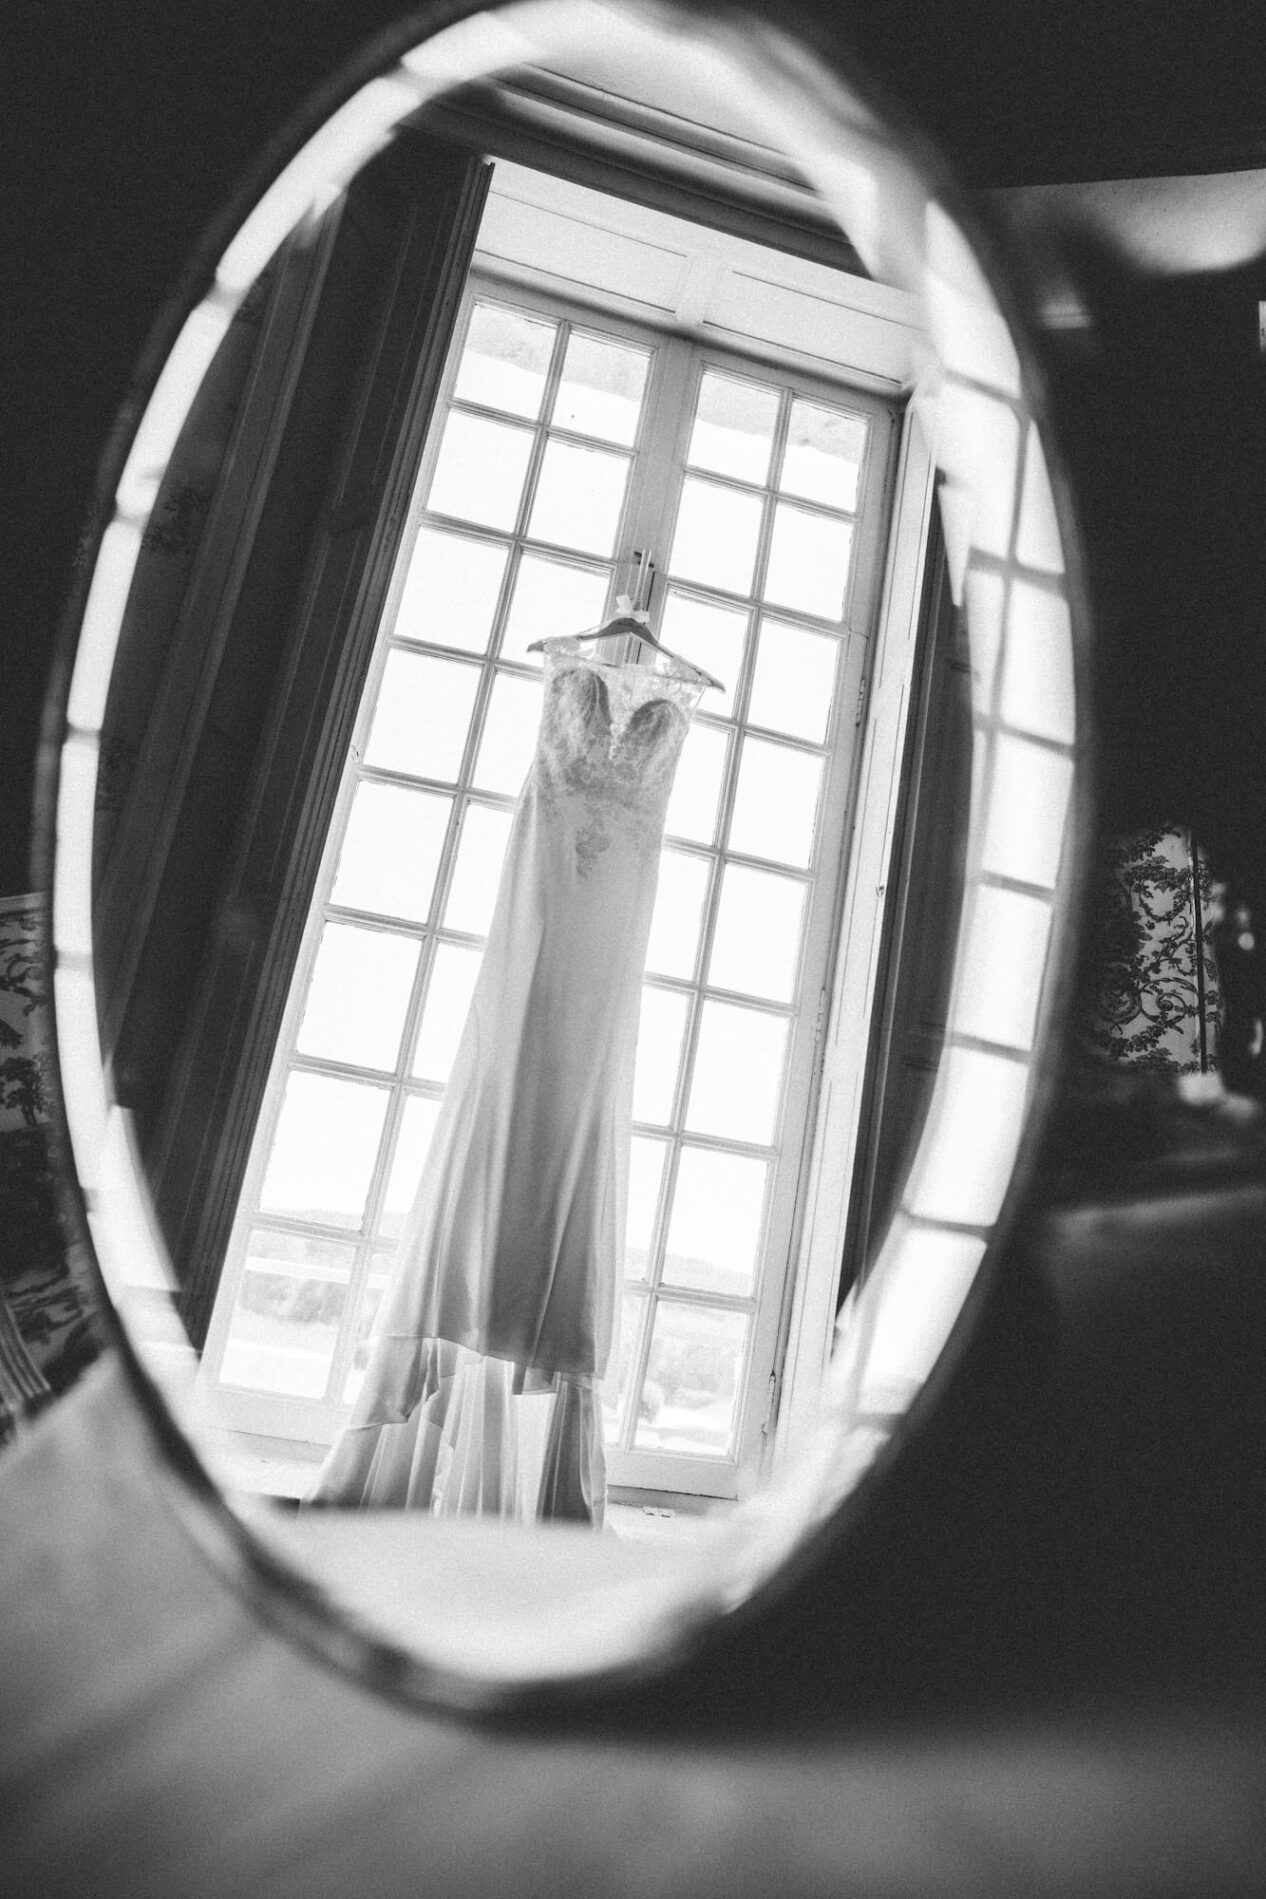 Robe de la mariée en noir et blanc dans un miroir